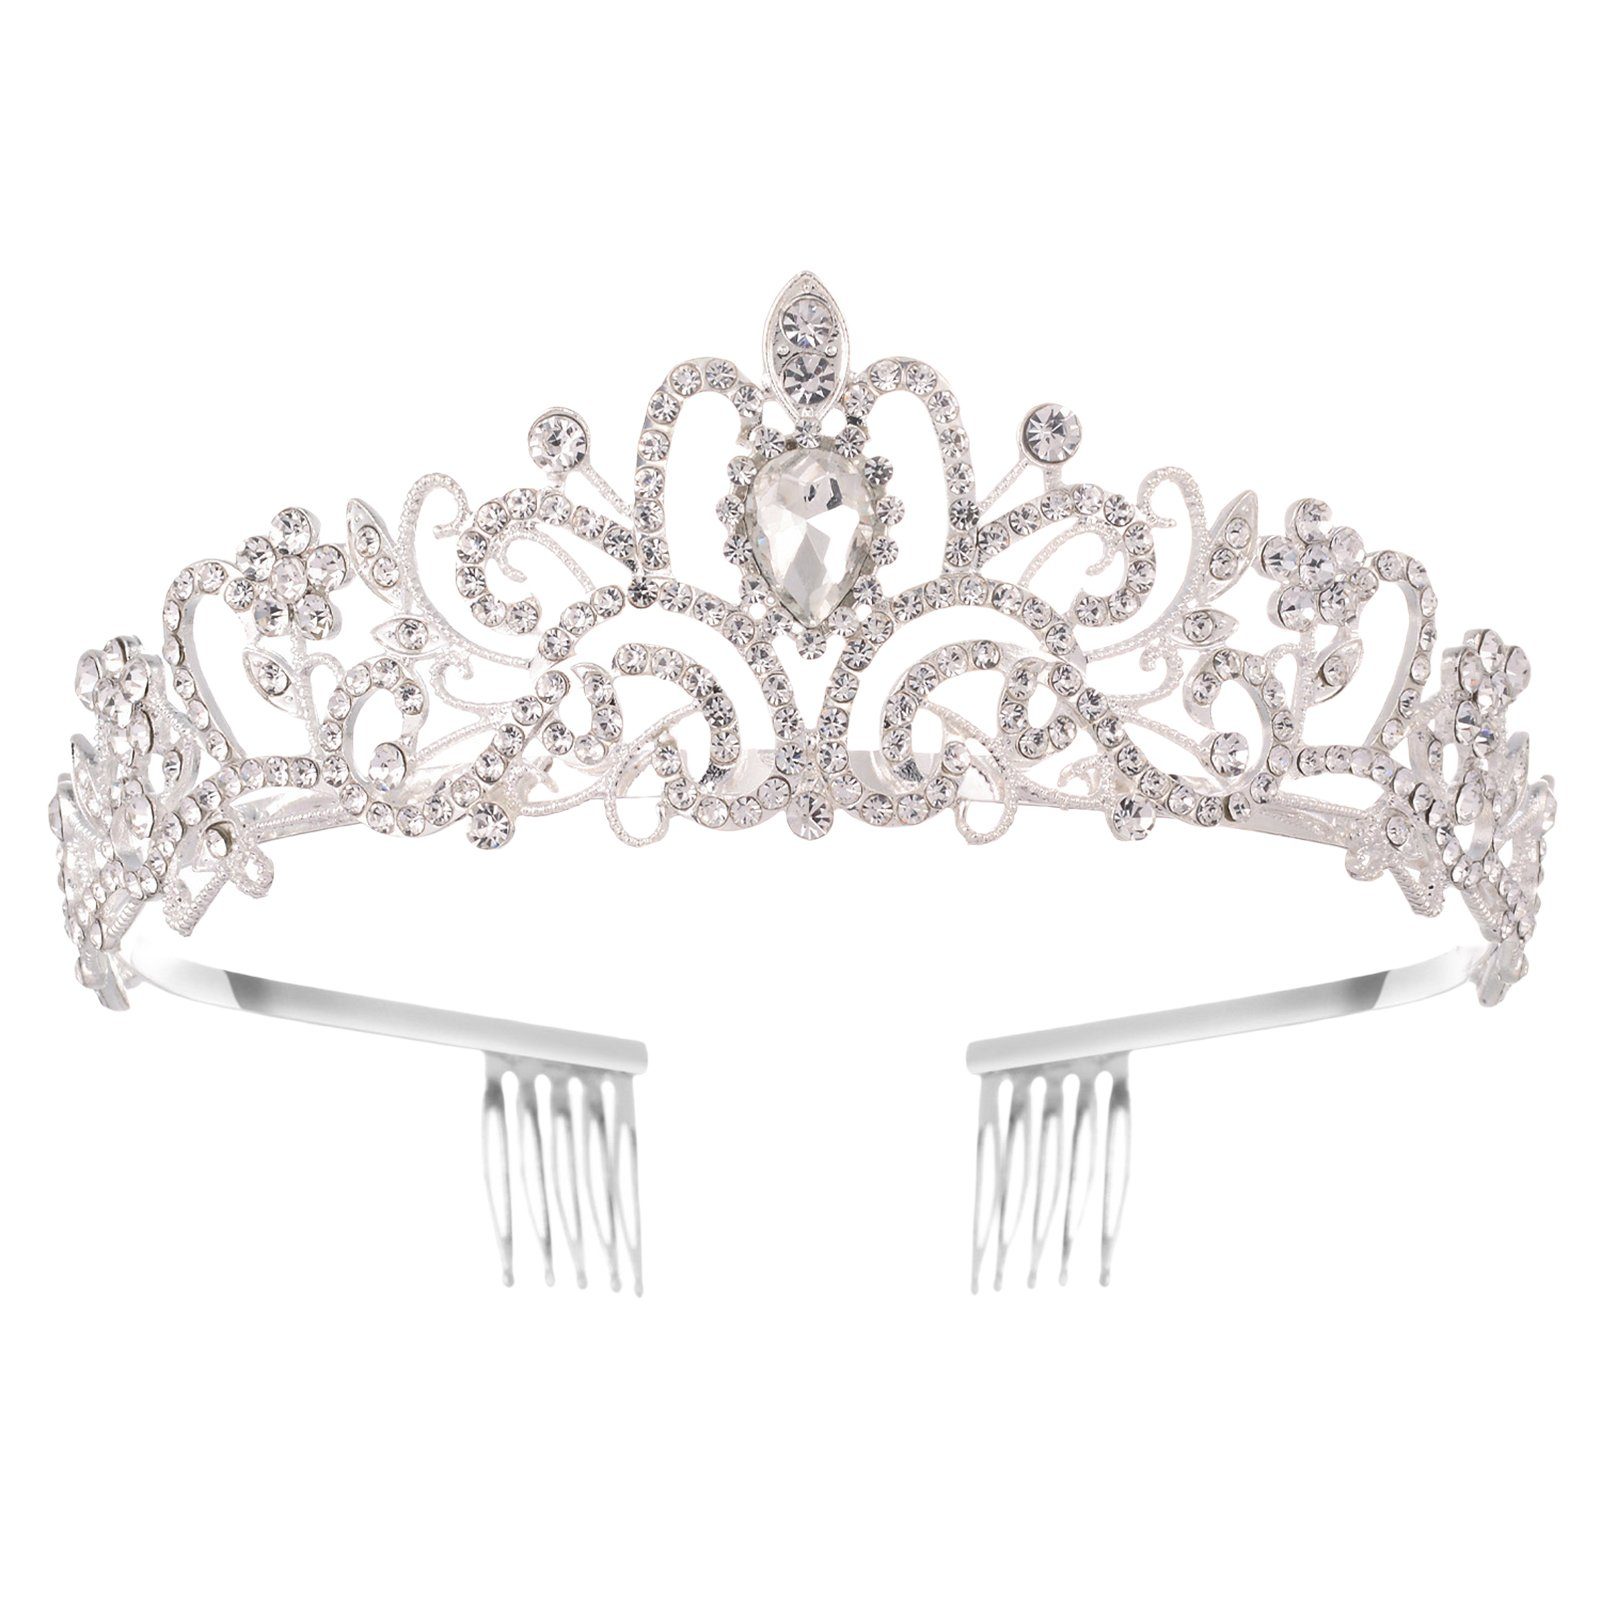 Blusmart Haarband Leichte, Luxuriöse Strass-Kronen-Tiaras Für Hochzeit, Haarschmuck, Haarband silver